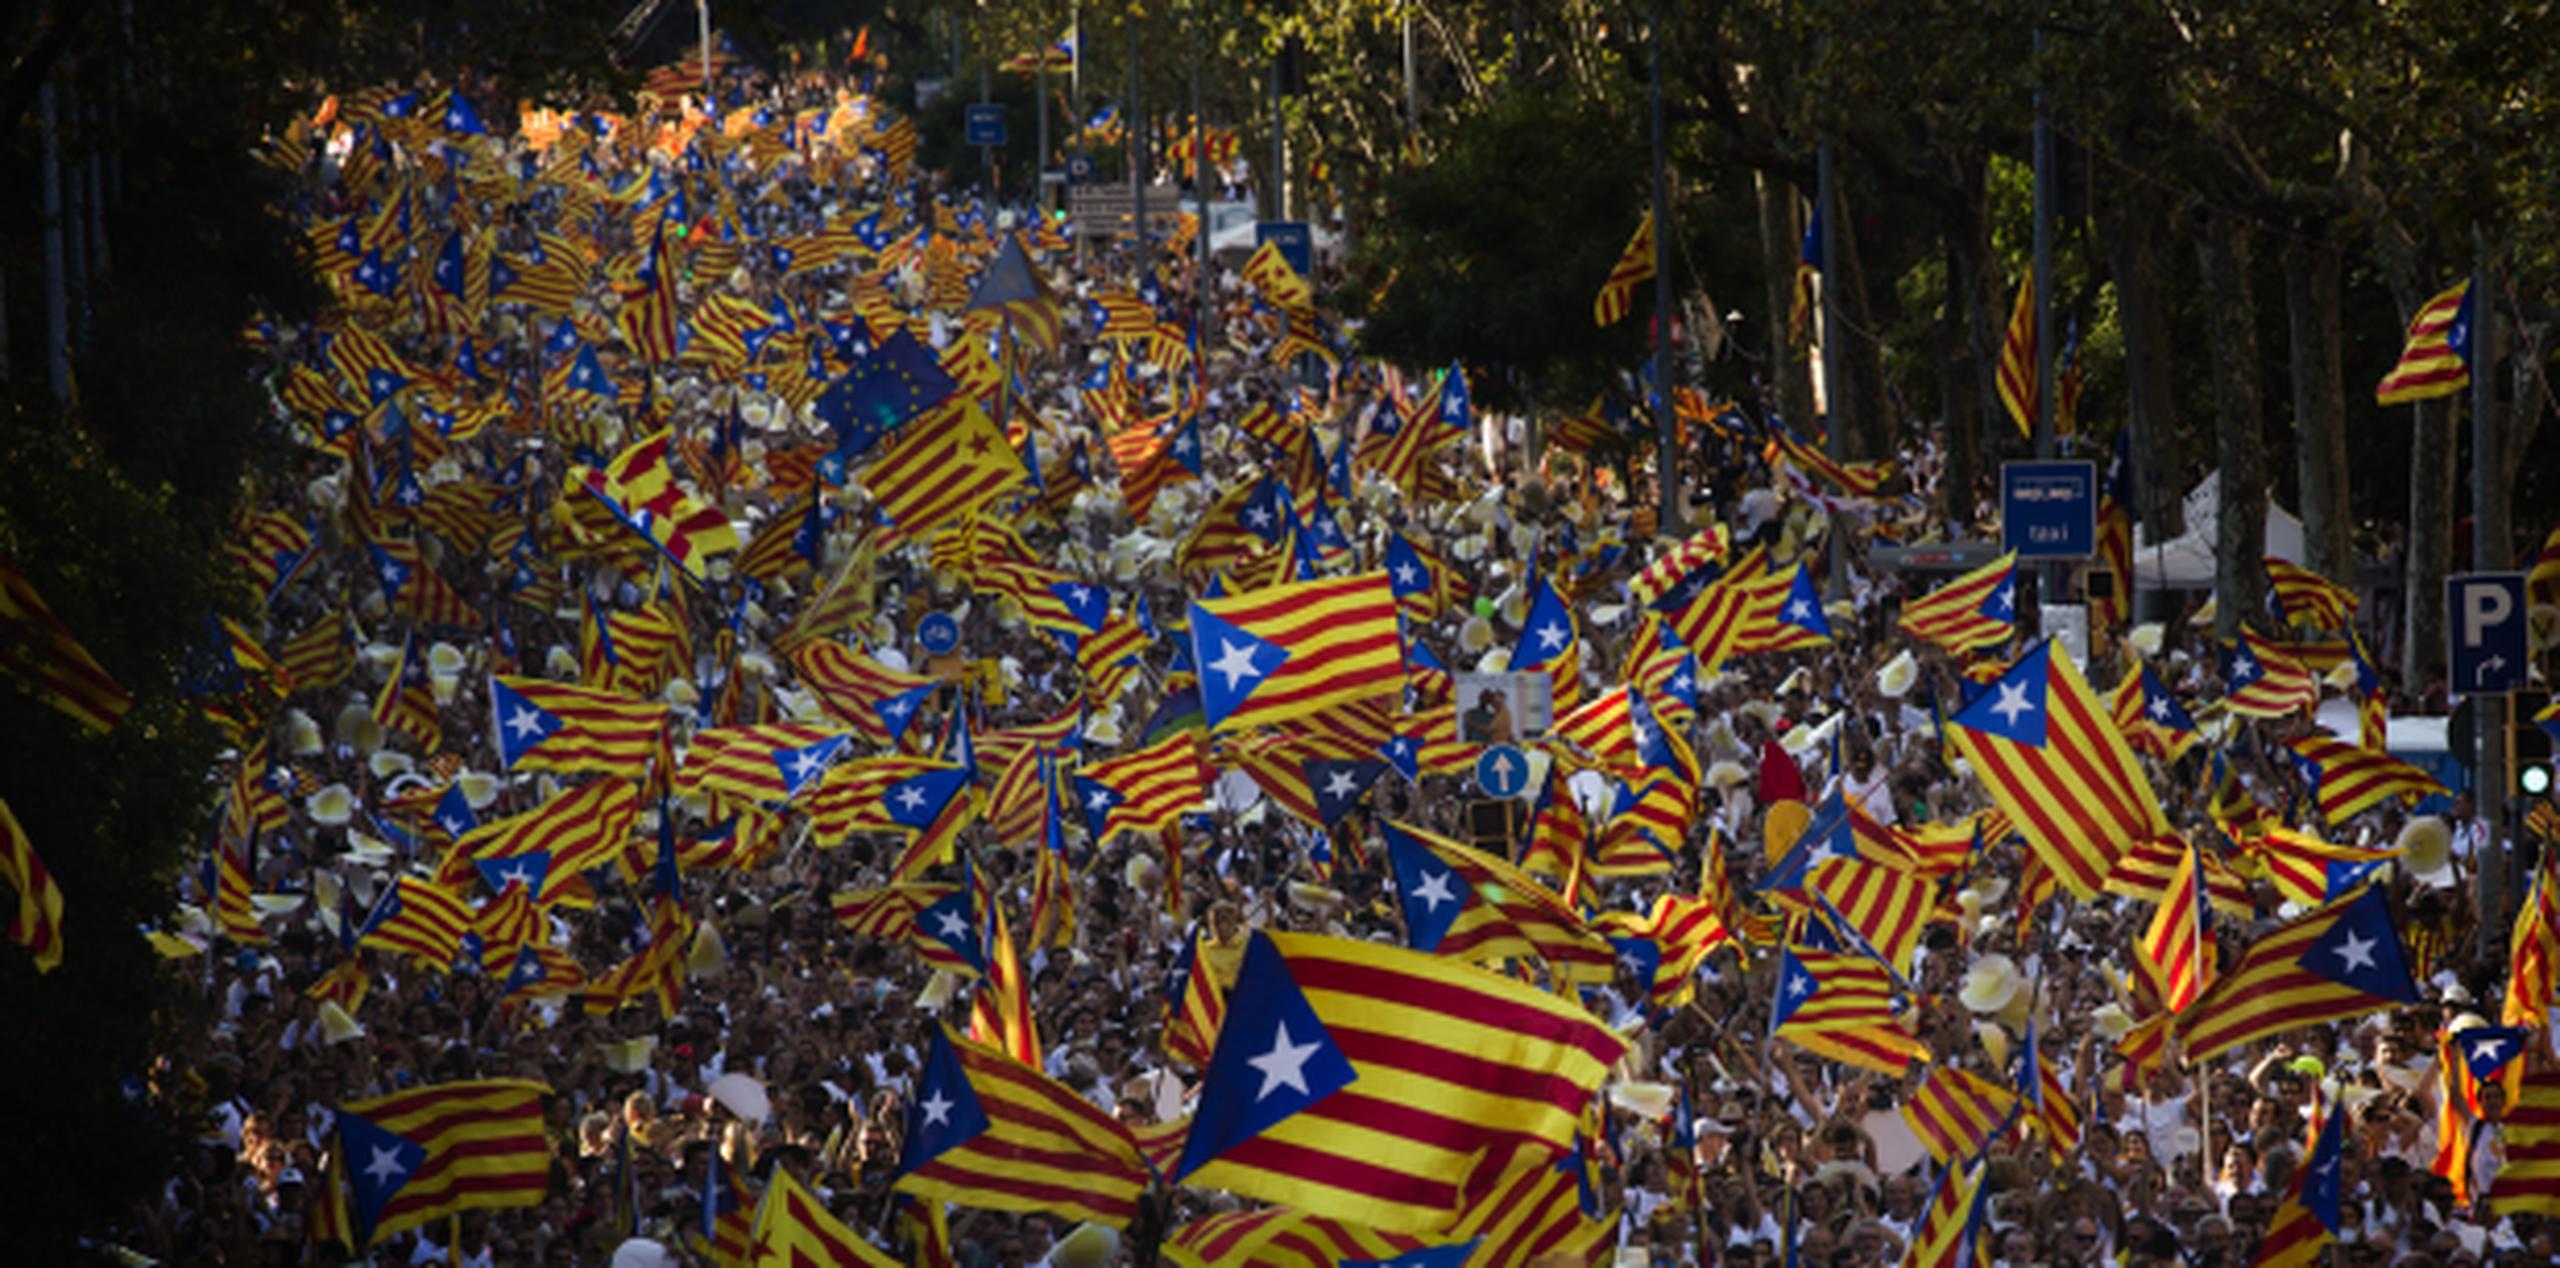 El Día Nacional Catalán ha sido utilizado desde hace mucho tiempo para movilizar a las masas en apoyo de la separación de España. (AP)